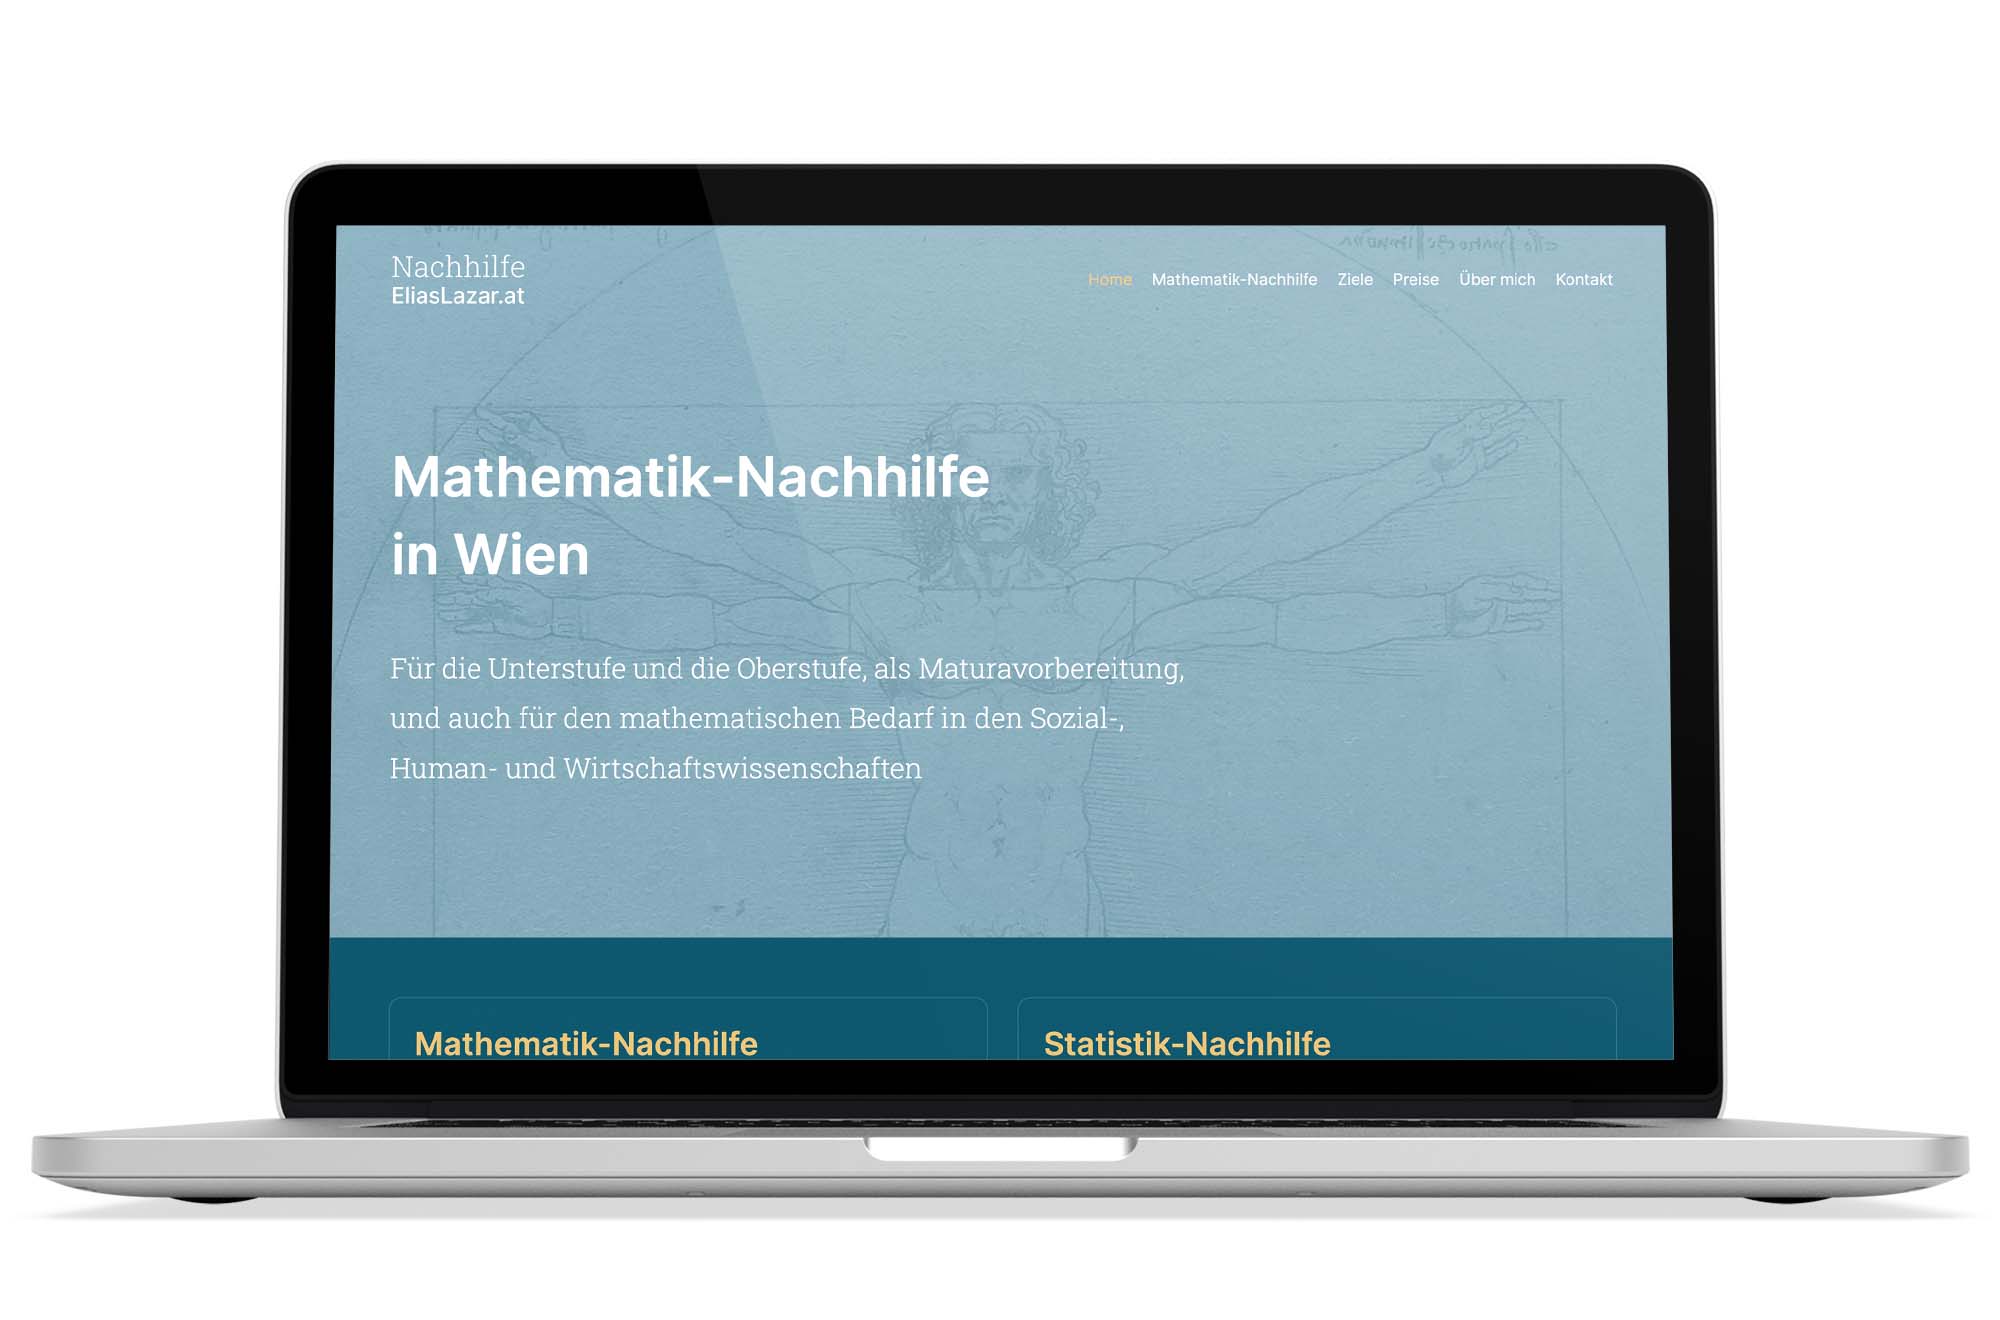 Responsive Webdesign Beispiel: Neue mobile Webseite für Mathematik-Nachhilfe